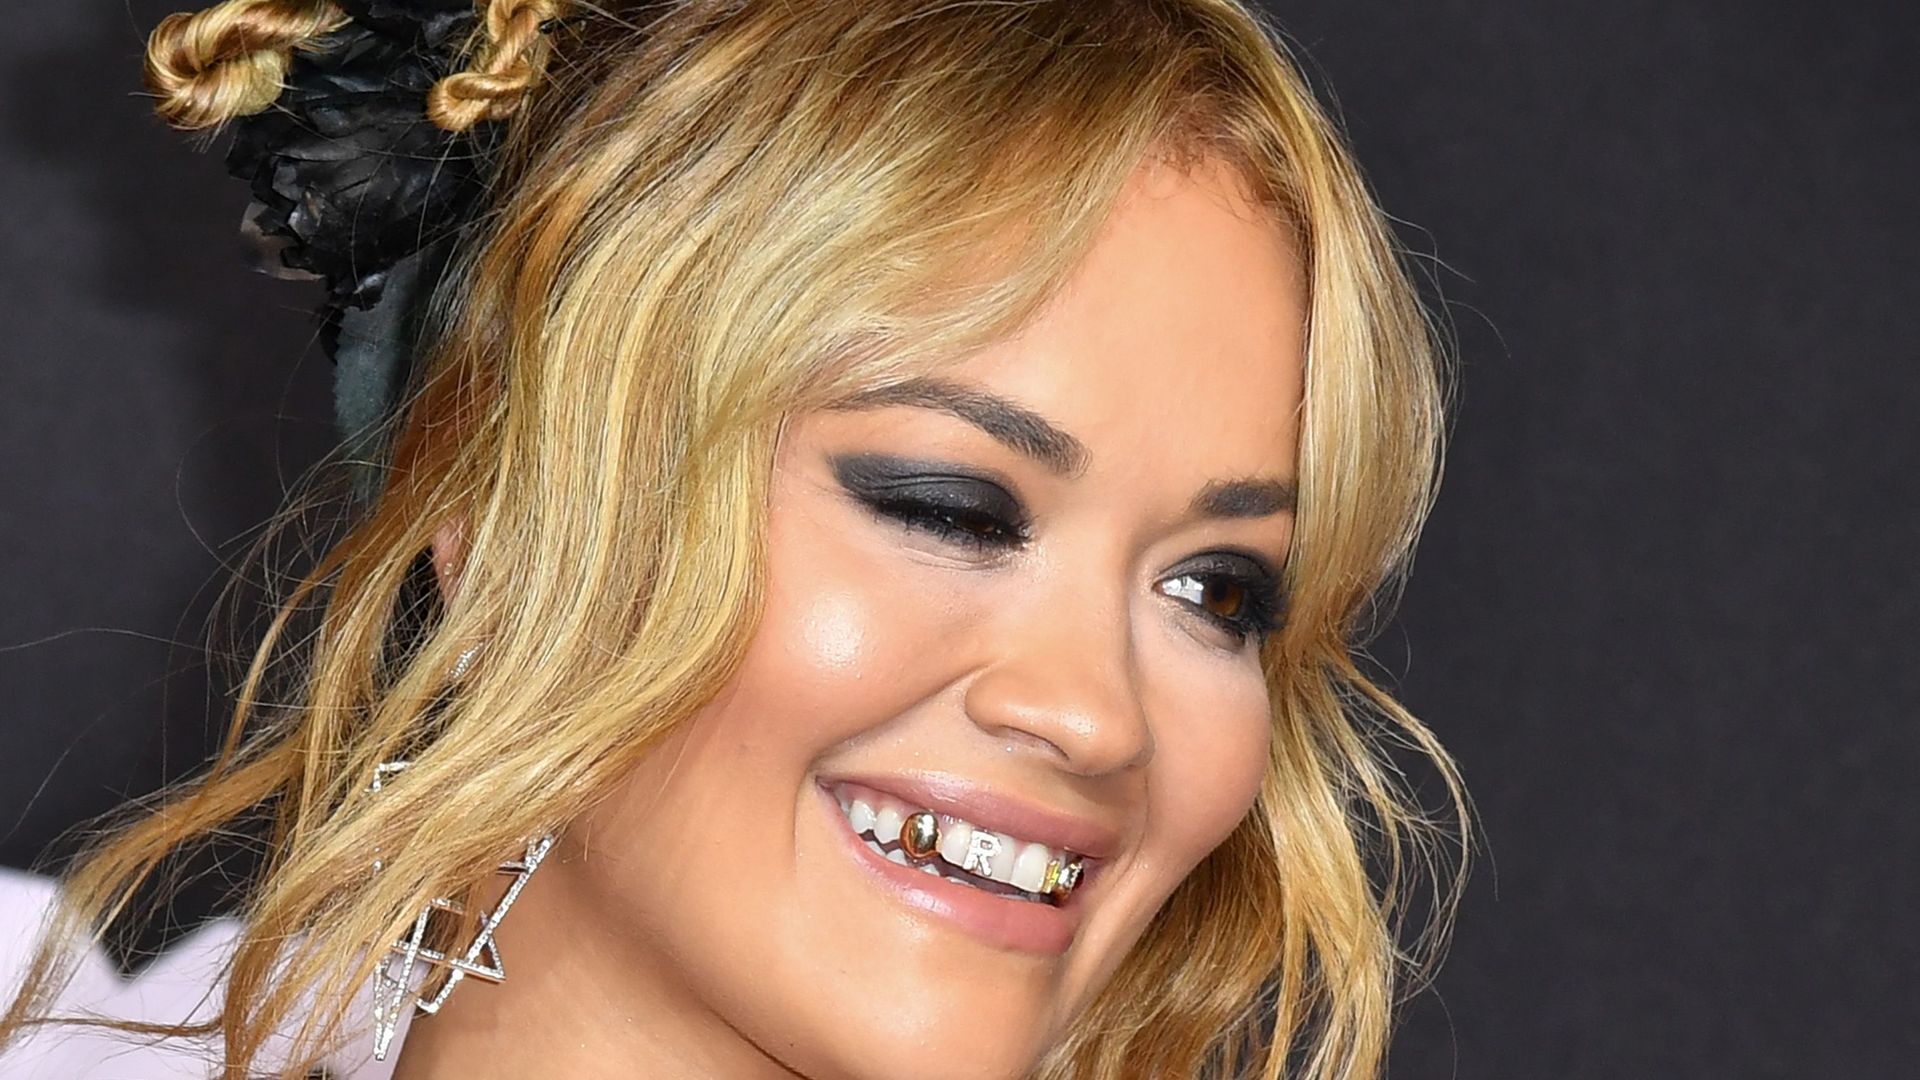 Rita Ora a débarqué aux MTV Video Music Awards avec plusieurs bijoux de dents.